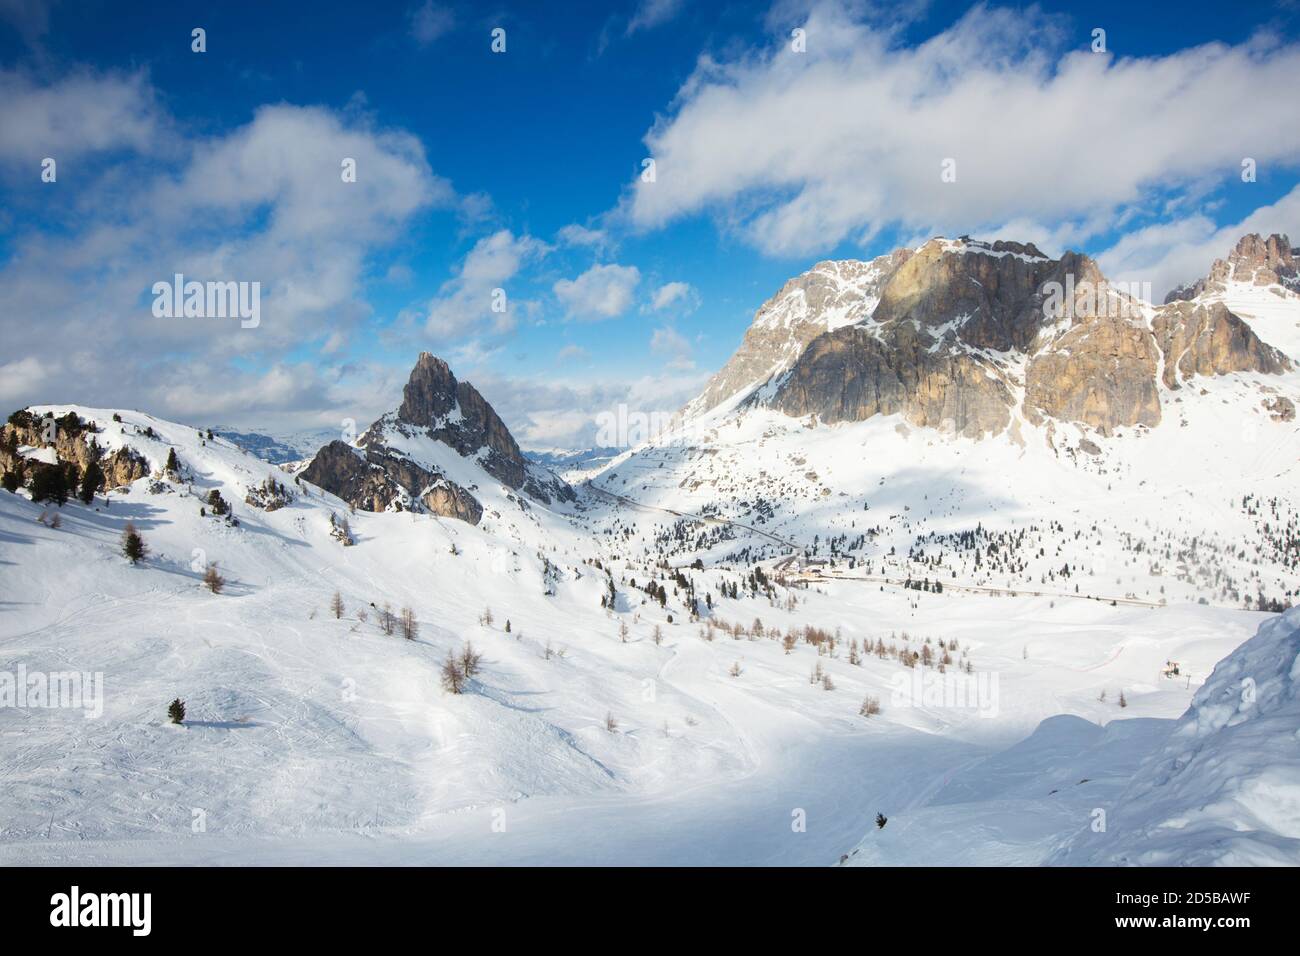 Dolomiten Dolomiti Italien im Winter schöne alpen Winterberge und Skipiste Cortina d'Ampezzo Sella Ronda Col Gallina Berggipfel Berühmte l Stockfoto